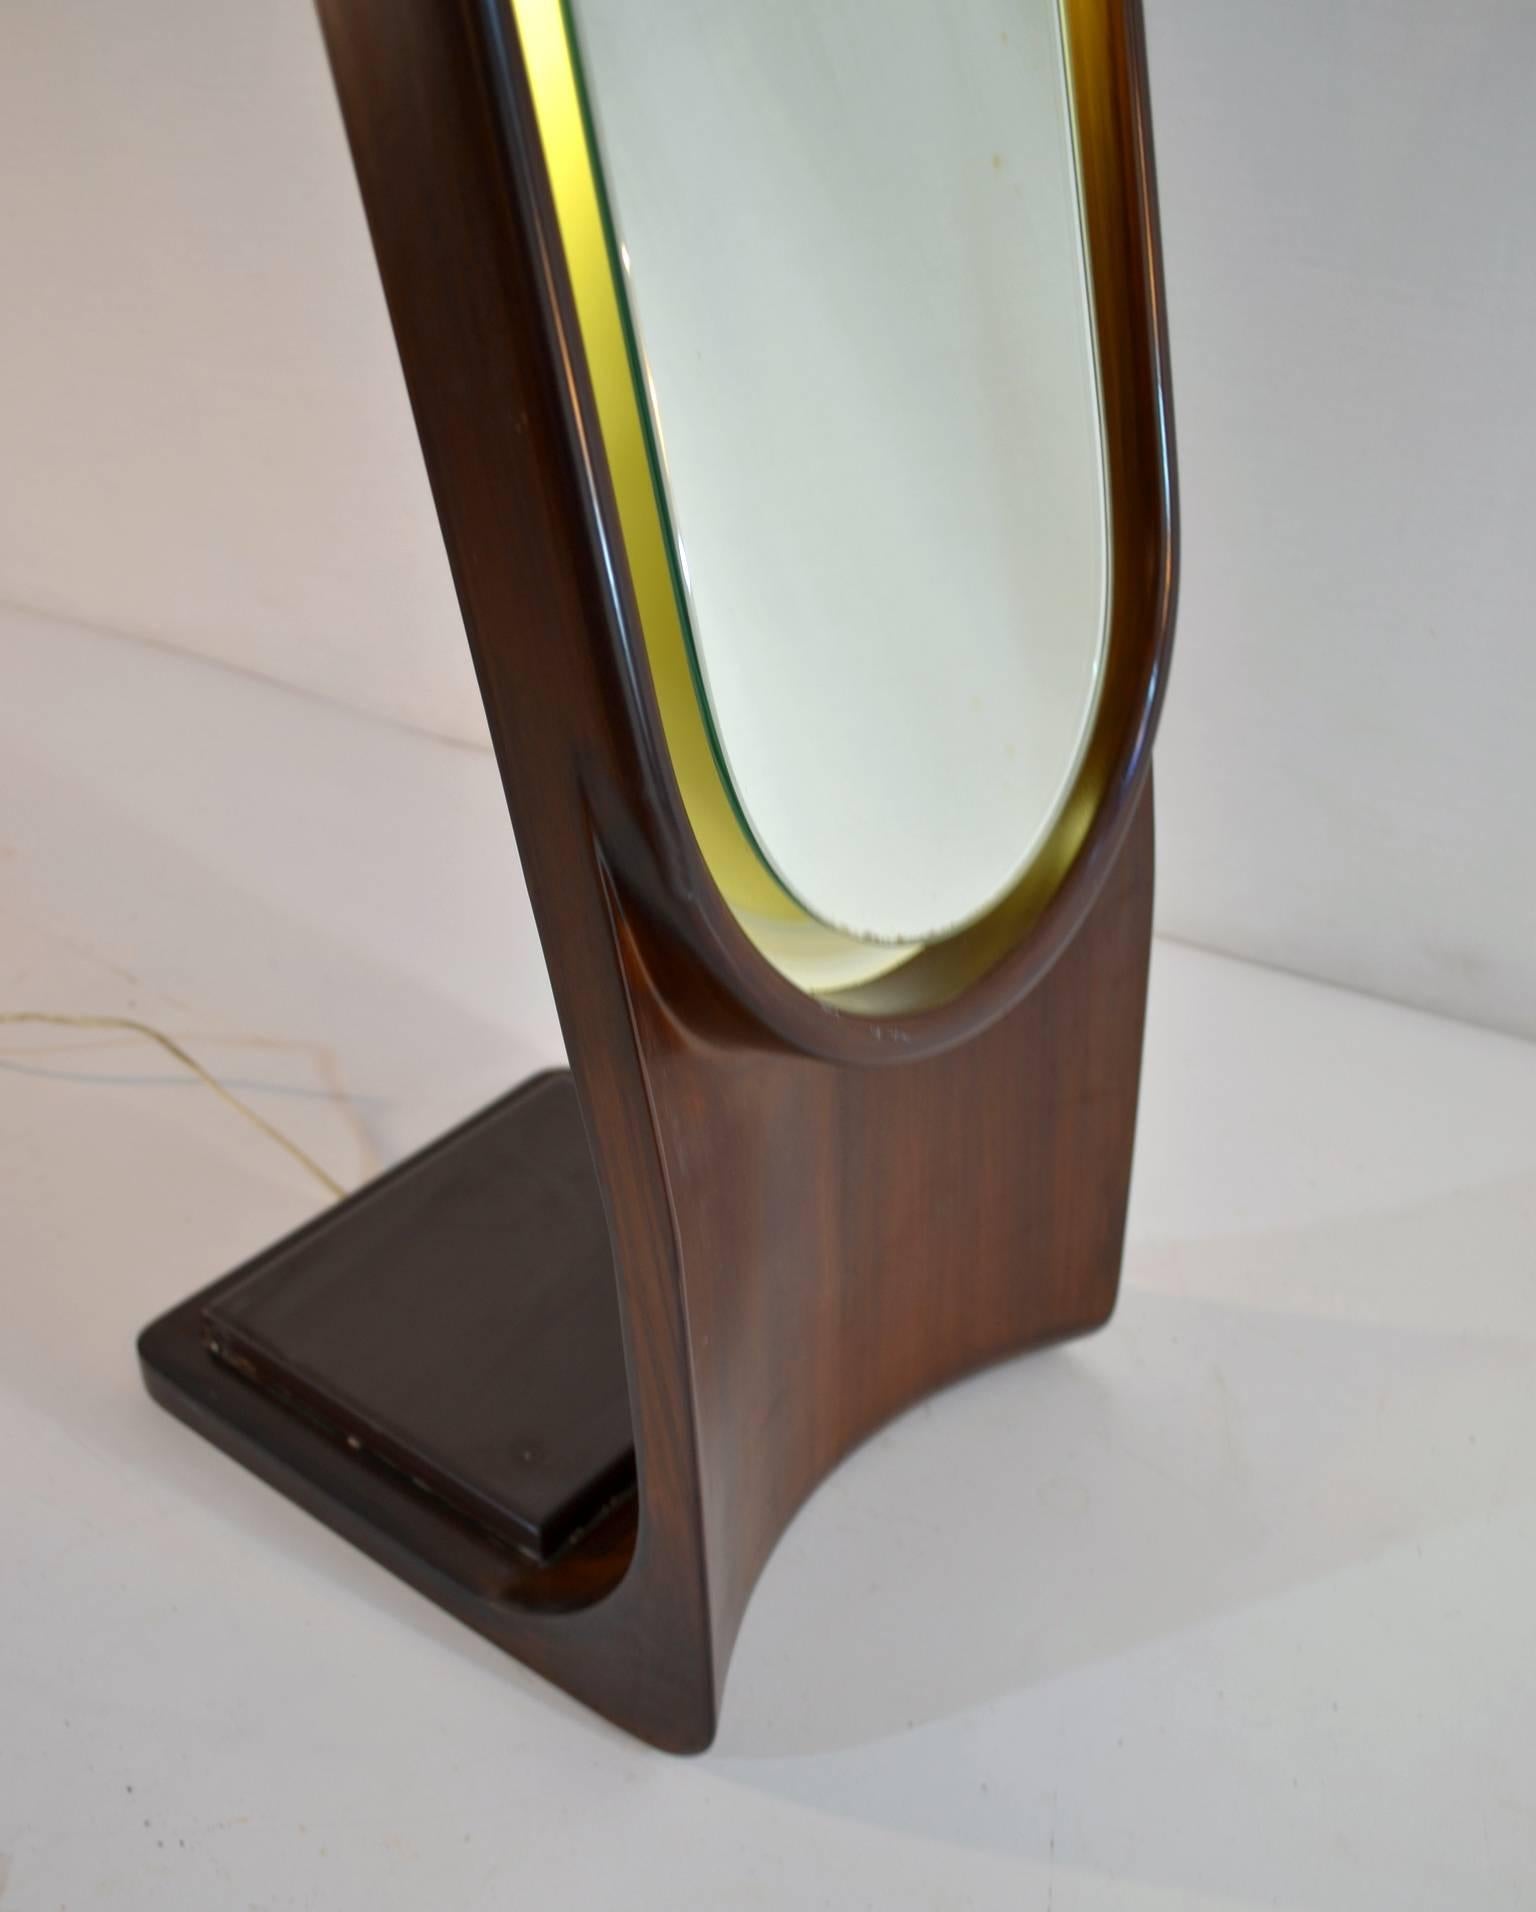 backlit full length mirror